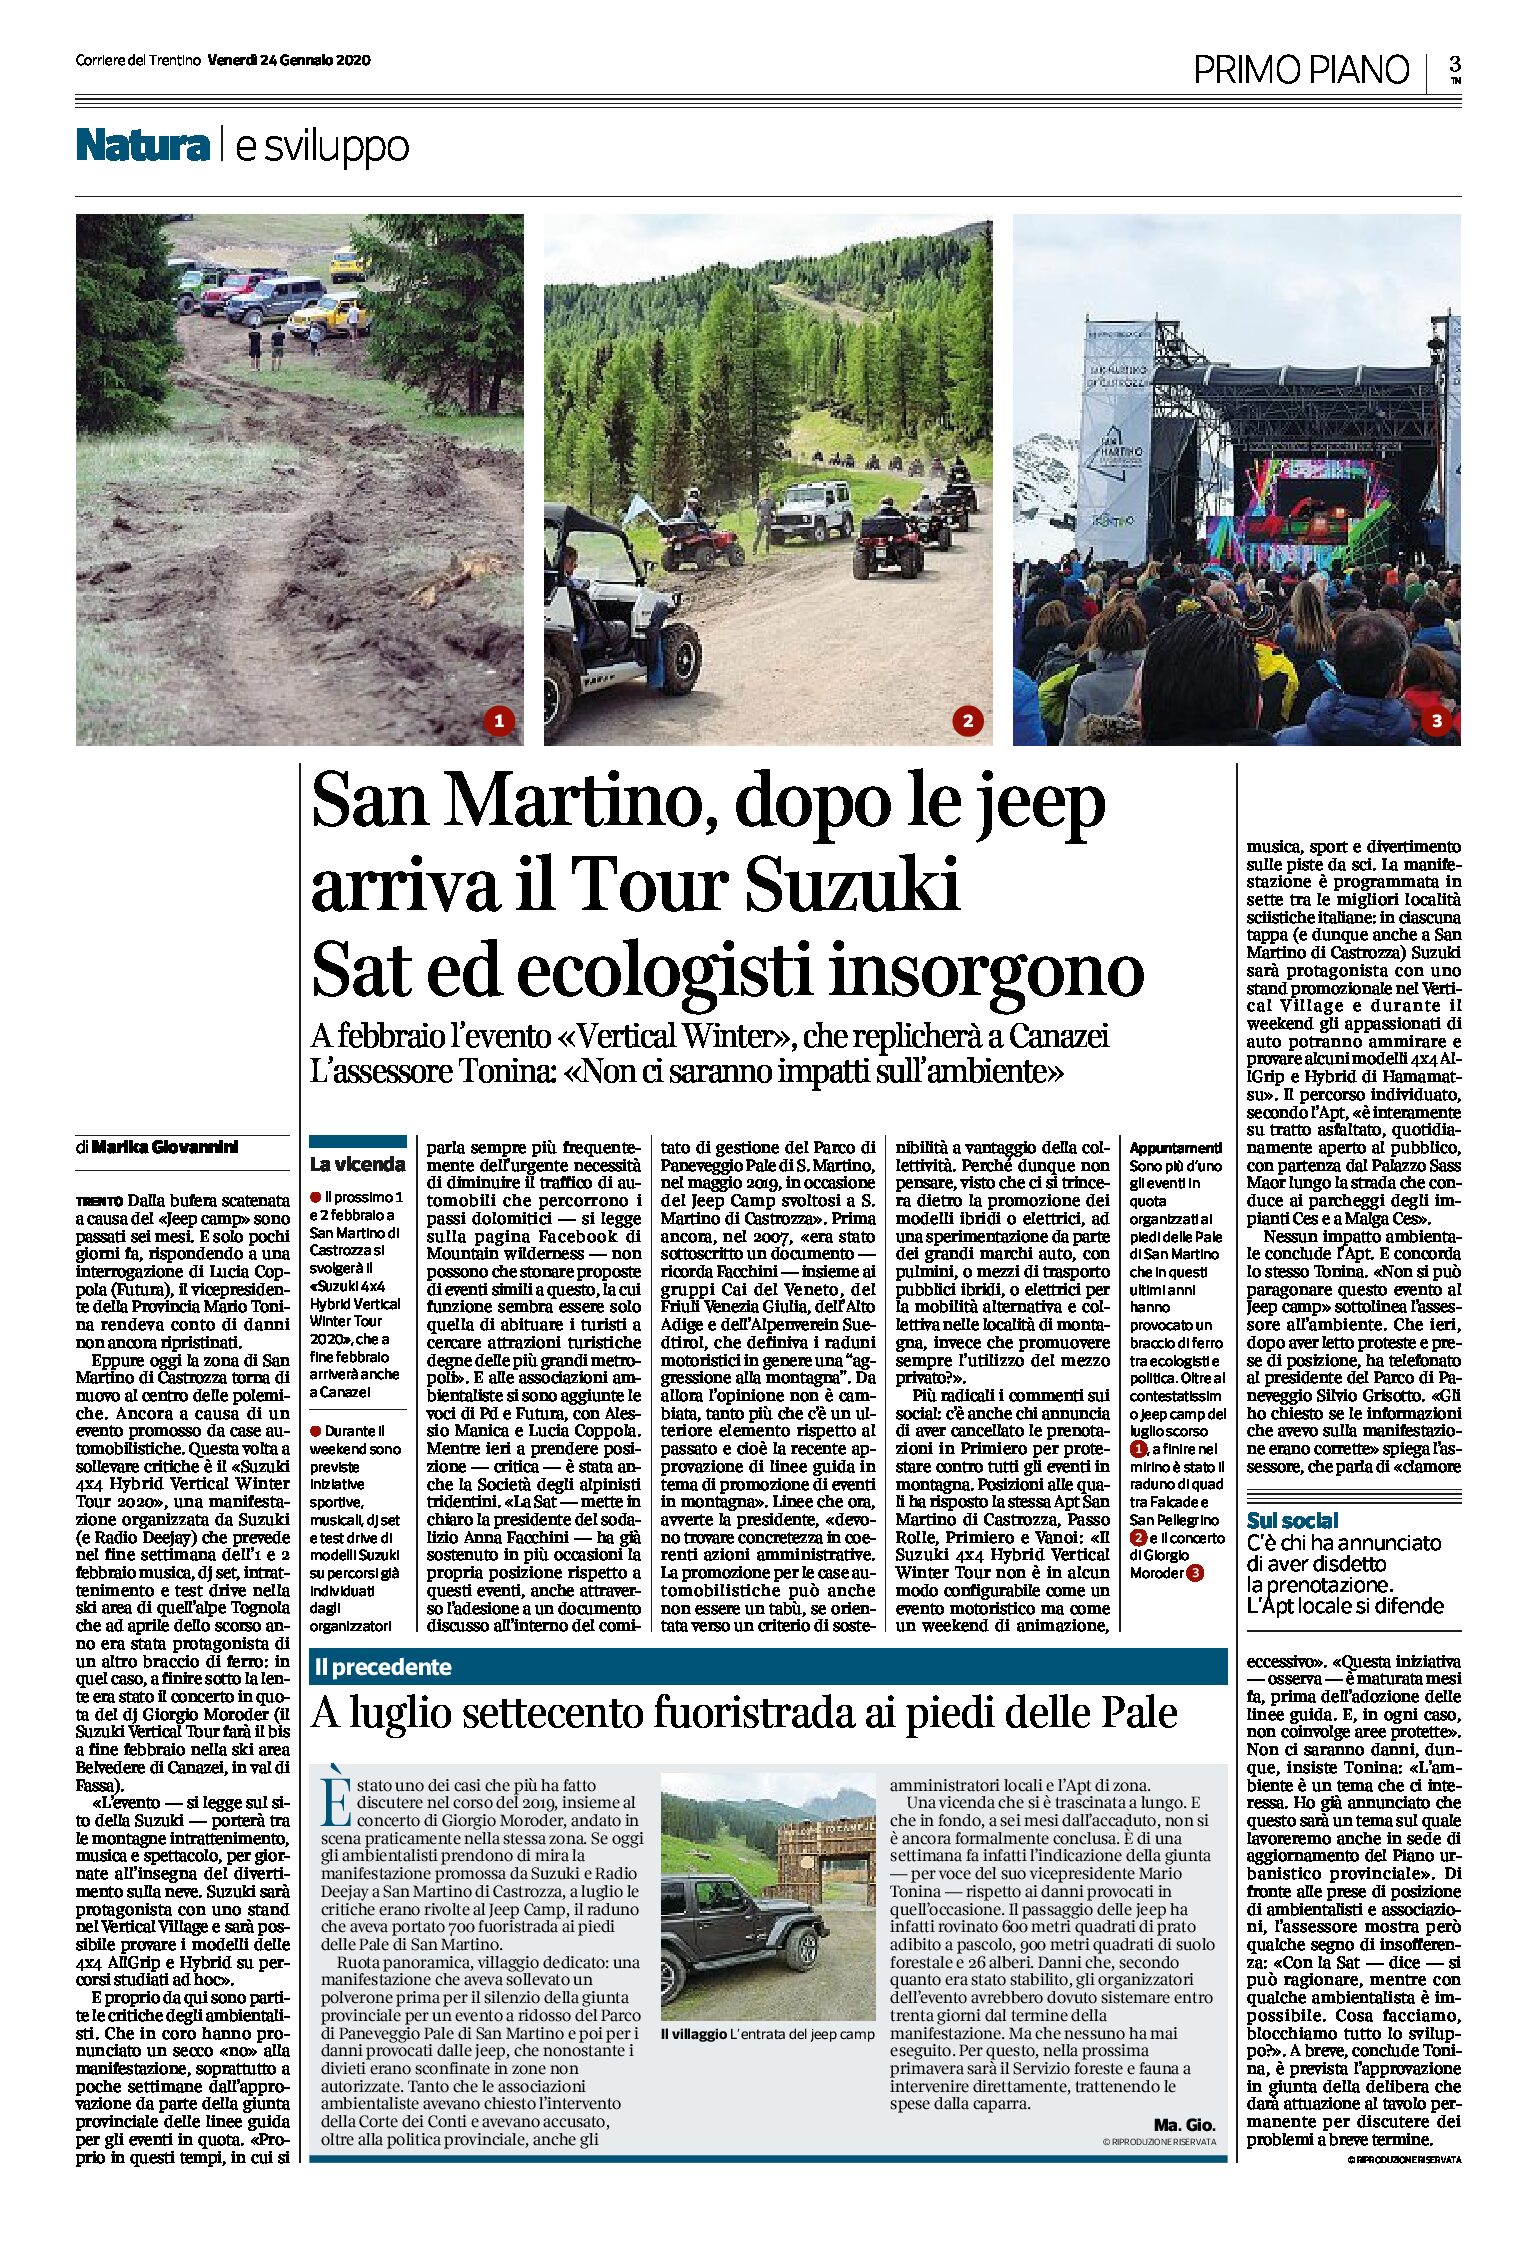 San Martino: dopo le jeep arriva il Tour Suzuki. Sat e ecologisti insorgono